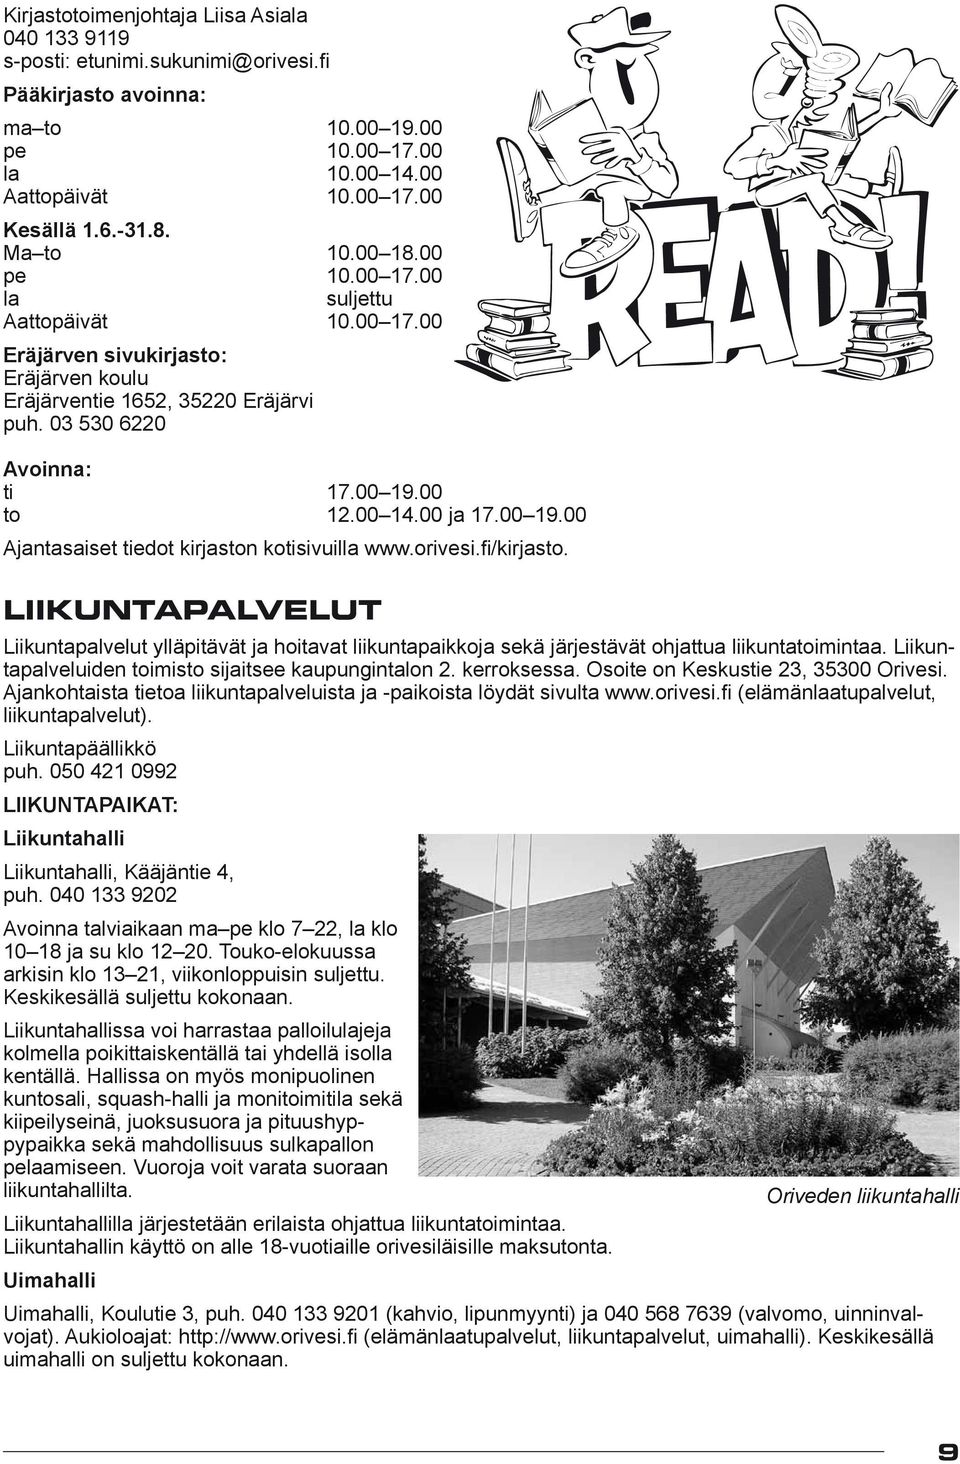 00 ja 17.00 19.00 Ajantasaiset tiedot kirjaston kotisivuilla www.orivesi.fi/kirjasto.